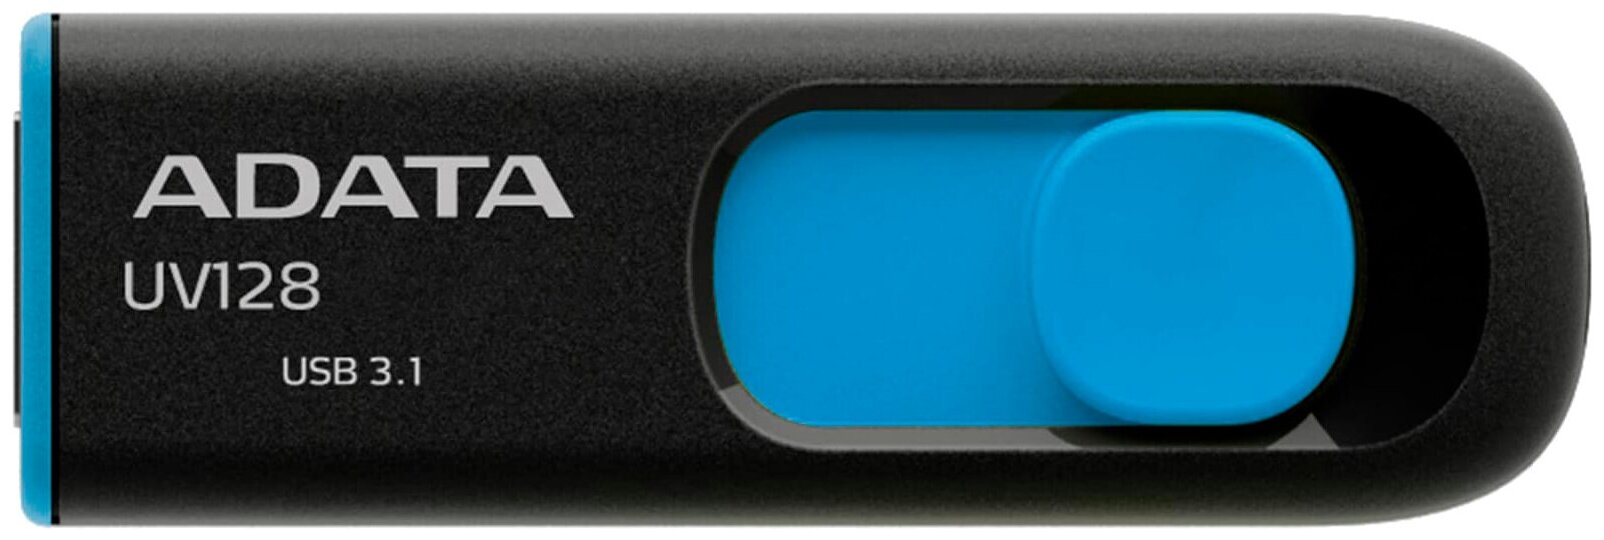 USB флешка ADATA DashDrive UV128 64Gb USB 3.1 blue